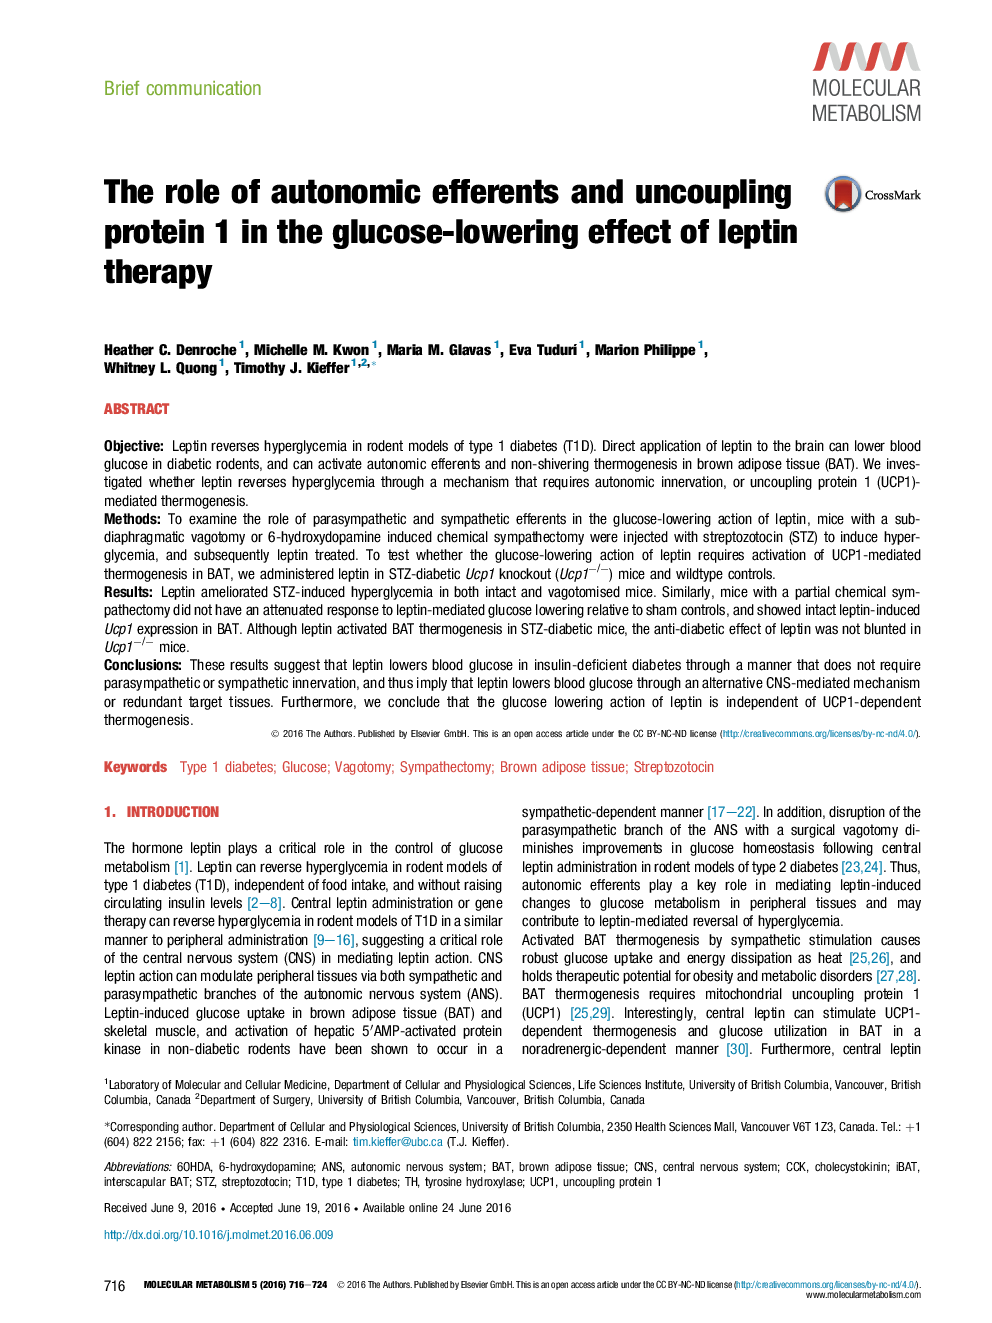 نقش اپراتورهای اتونومیکی و پروتئین 1 جدا شده در اثر کاهش لخته خون در لپتین